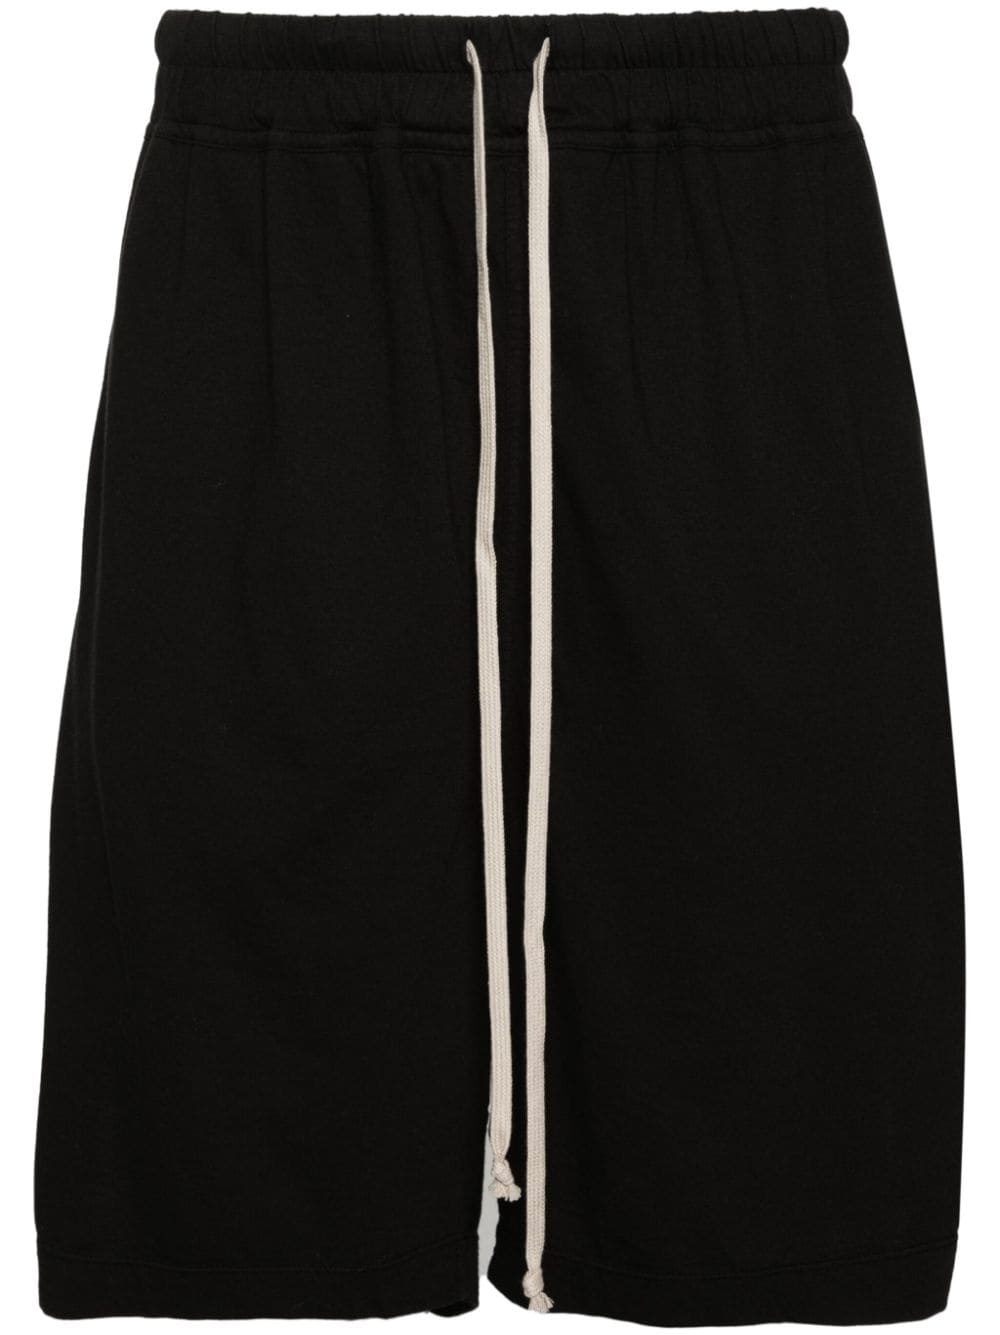 Long Boxers cotton shorts - 1